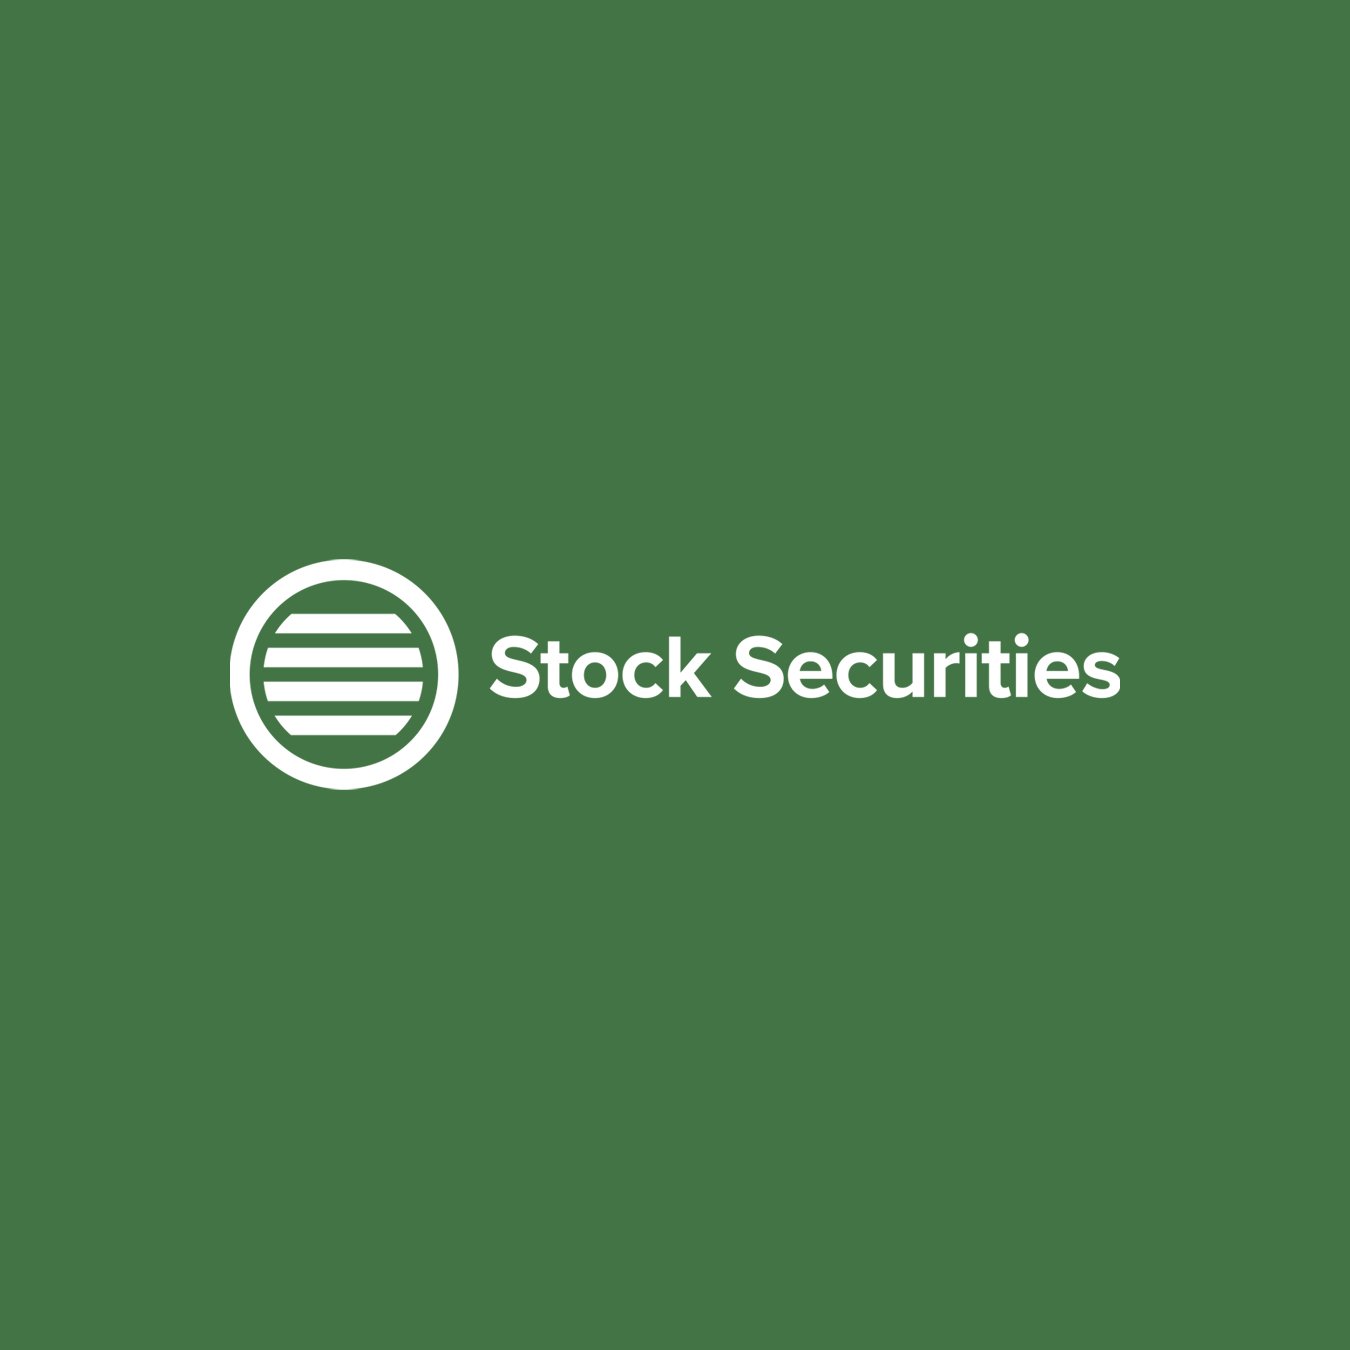 Stock Securities.jpg